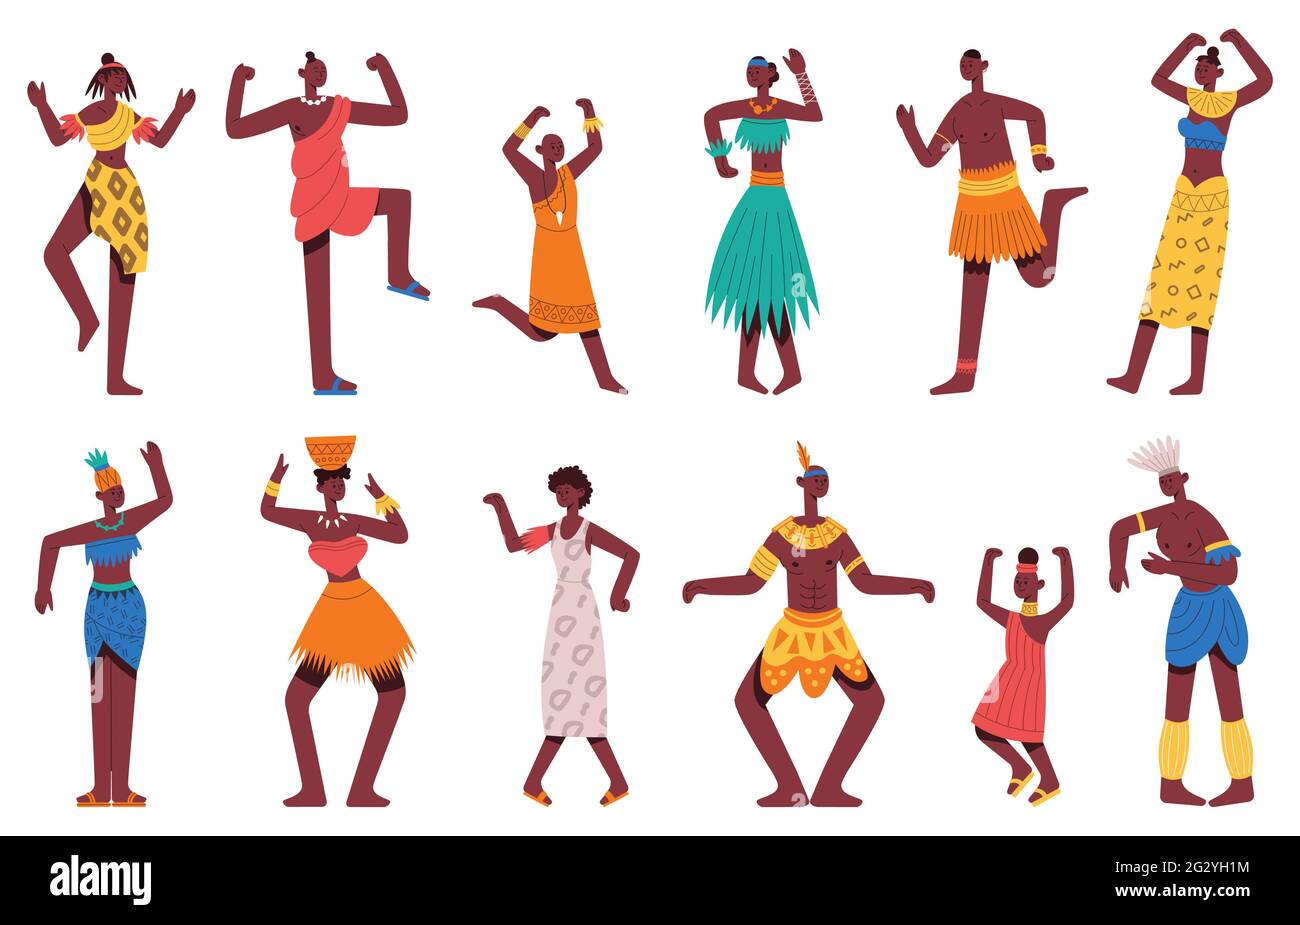 Danse africaine. Danse tribale danse africaine noir hommes et femmes personnages isolés de dessin animé scénario ensemble. Danseurs tribaux africains Illustration de Vecteur